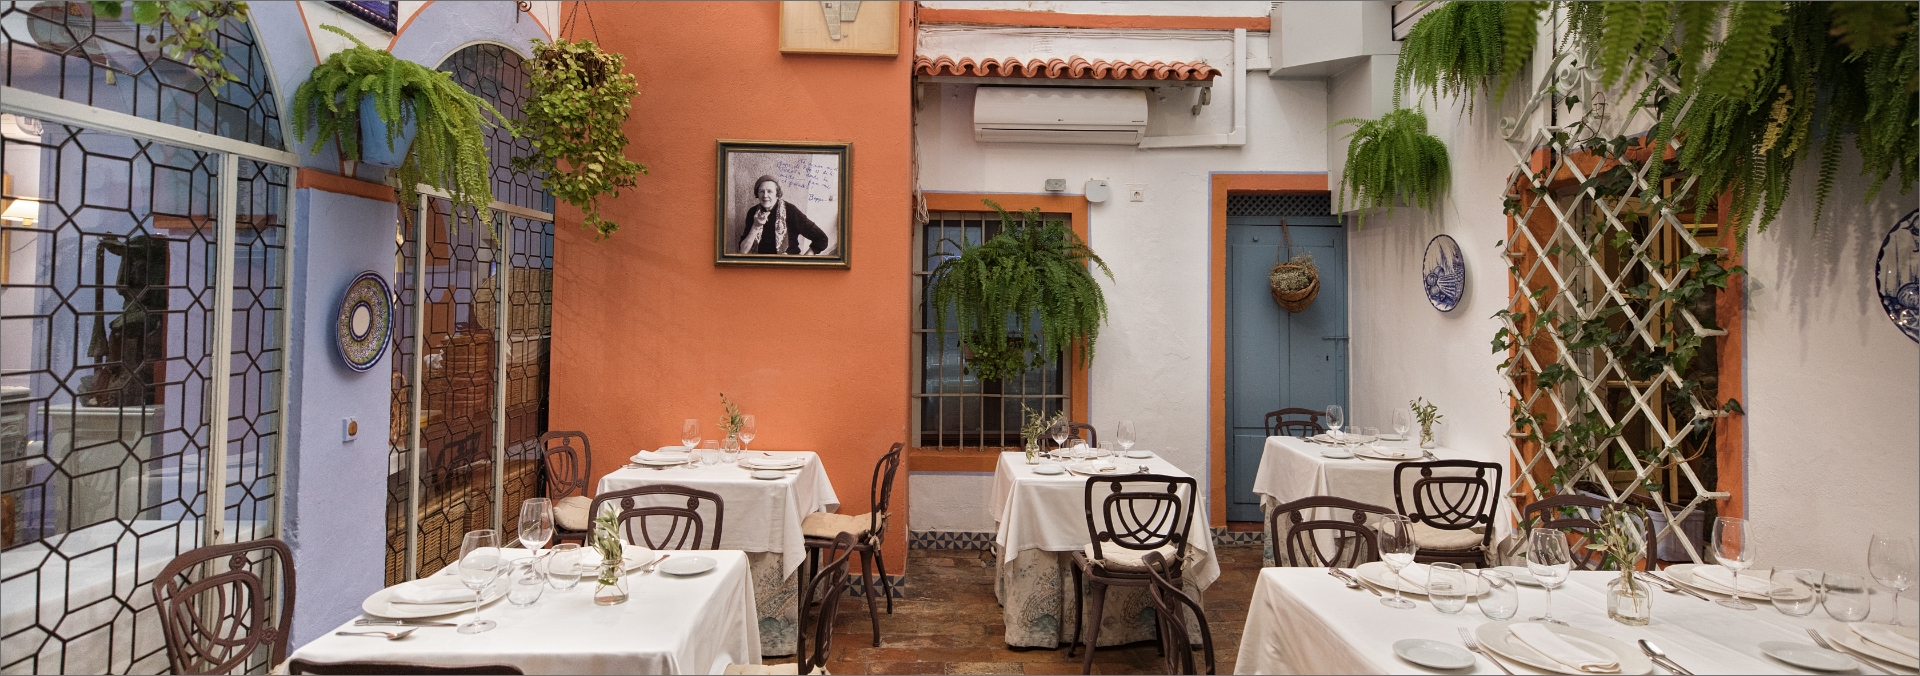 Inicio | Restaurante Casa Pepe de la Judería